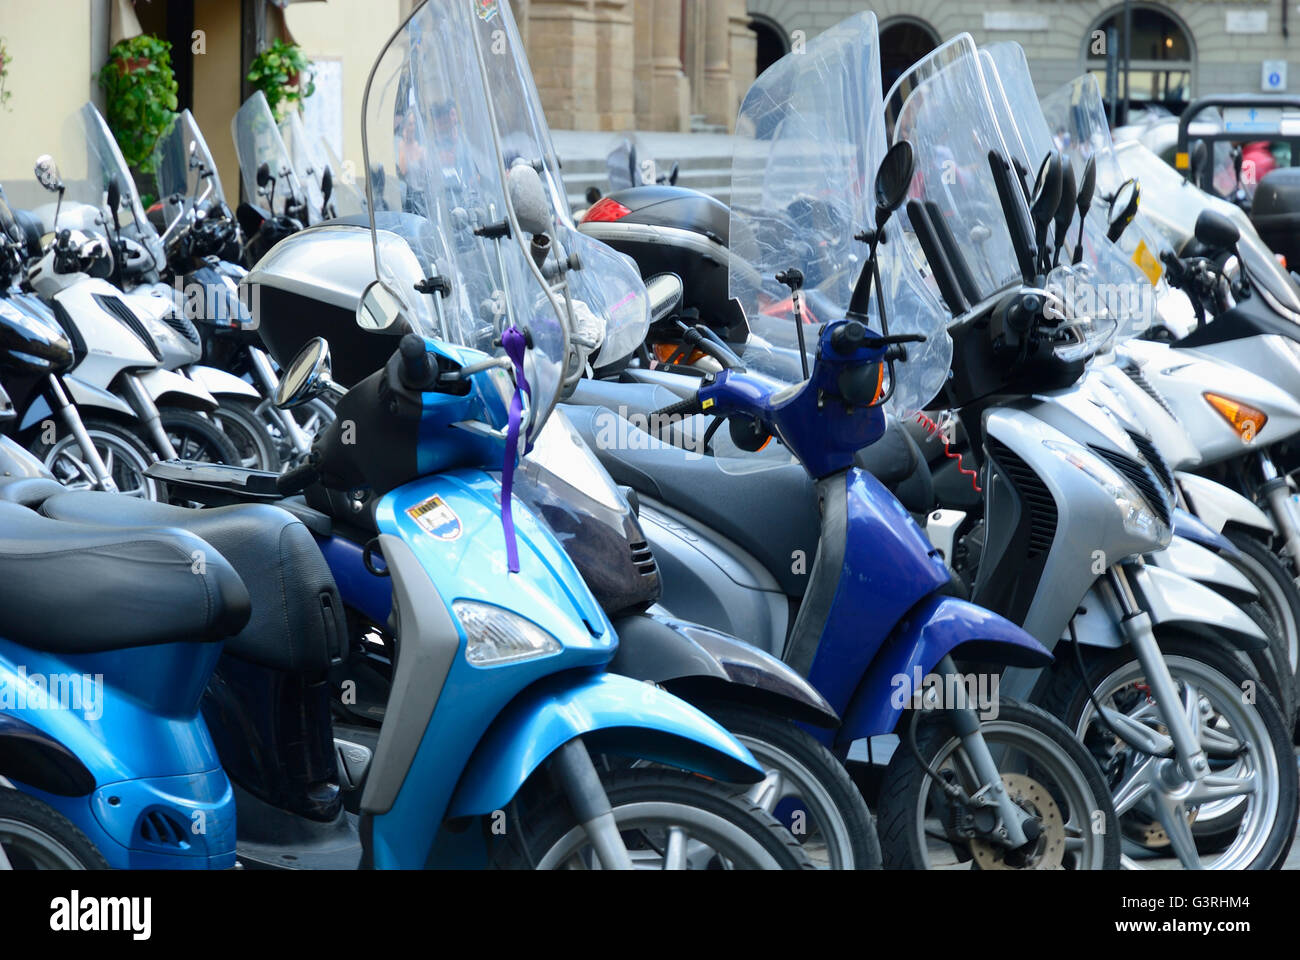 Motociclette scooter sono un simbolo dell'Italia. Firenze, Toscana, Italia, Europa Foto Stock